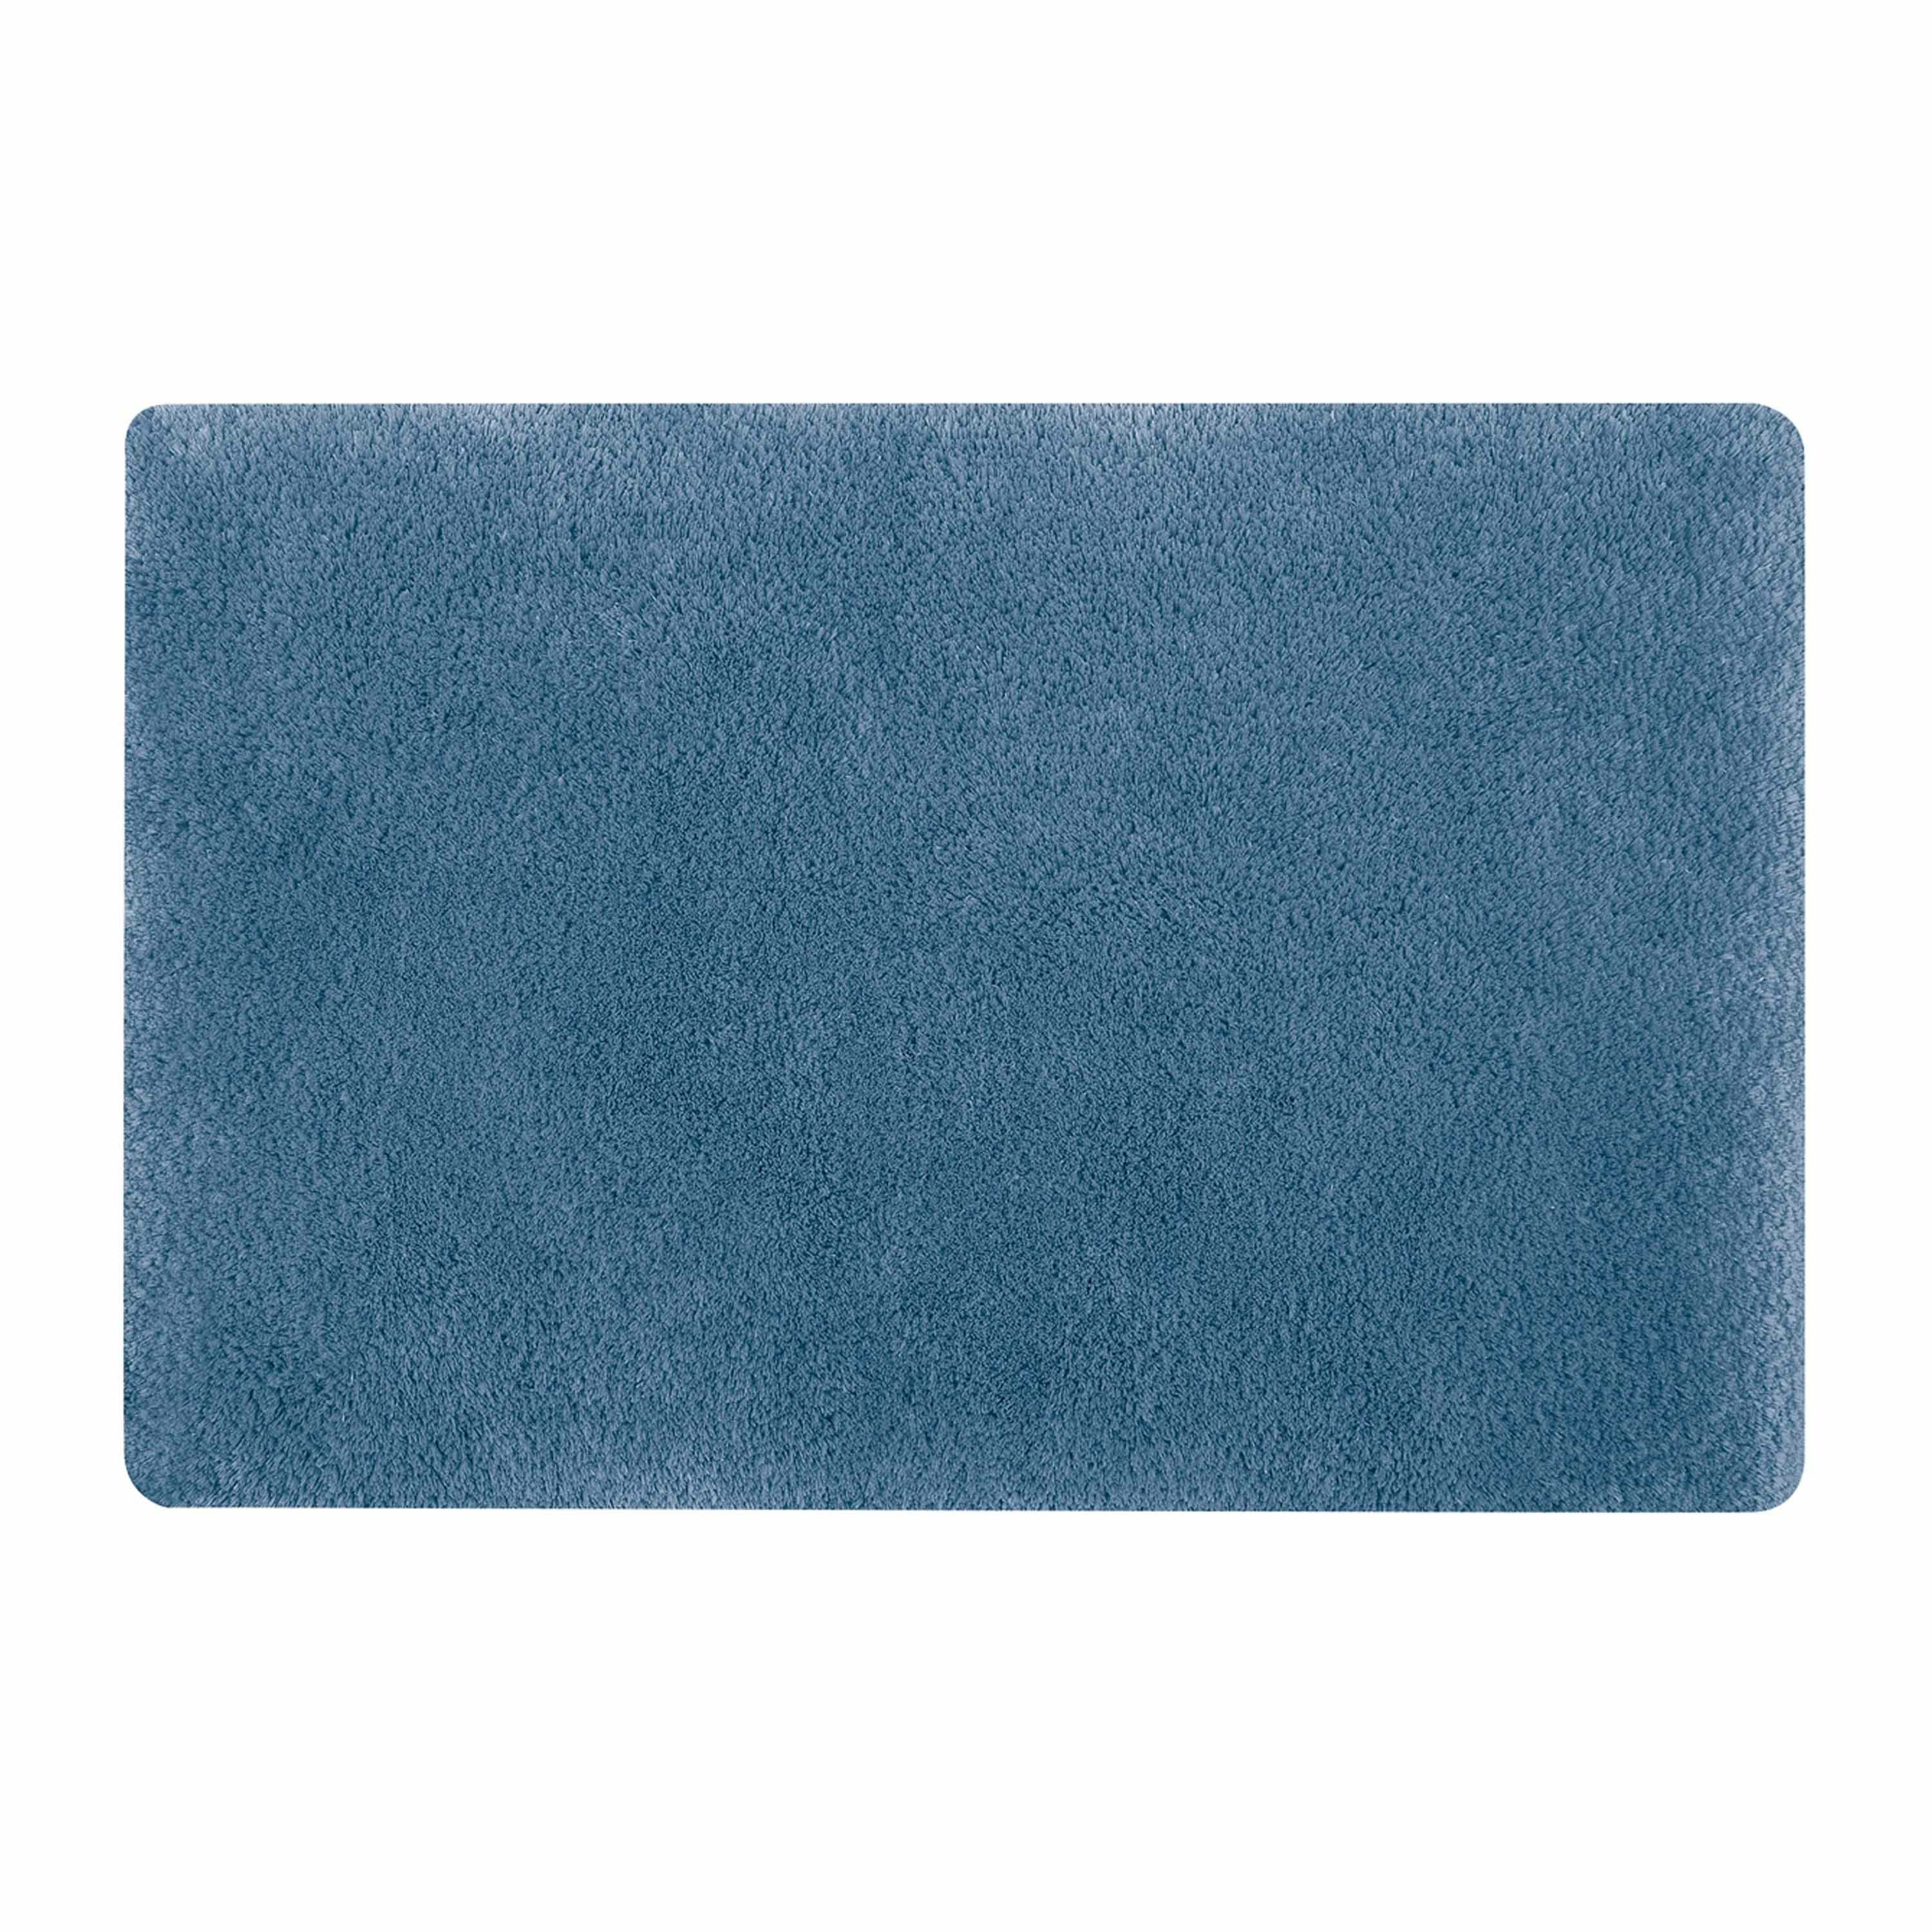 Spirella badkamer vloer kleedje-badmat tapijt hoogpolig en luxe uitvoering blauw 50 x 80 cm